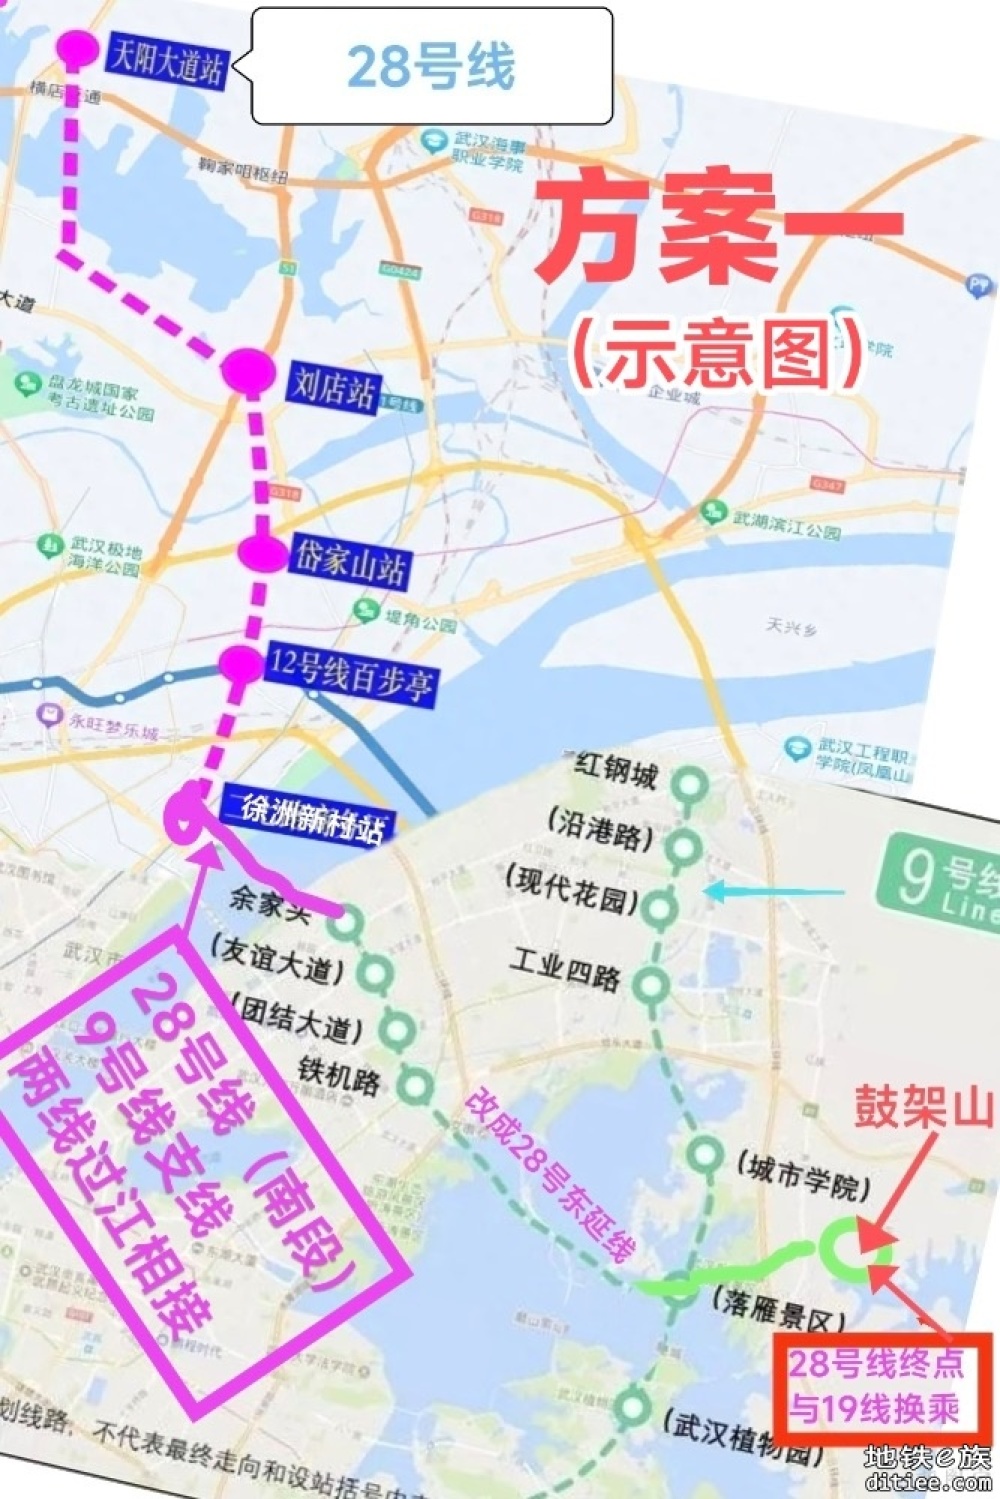 转自城市留言板：武汉地铁规划建议